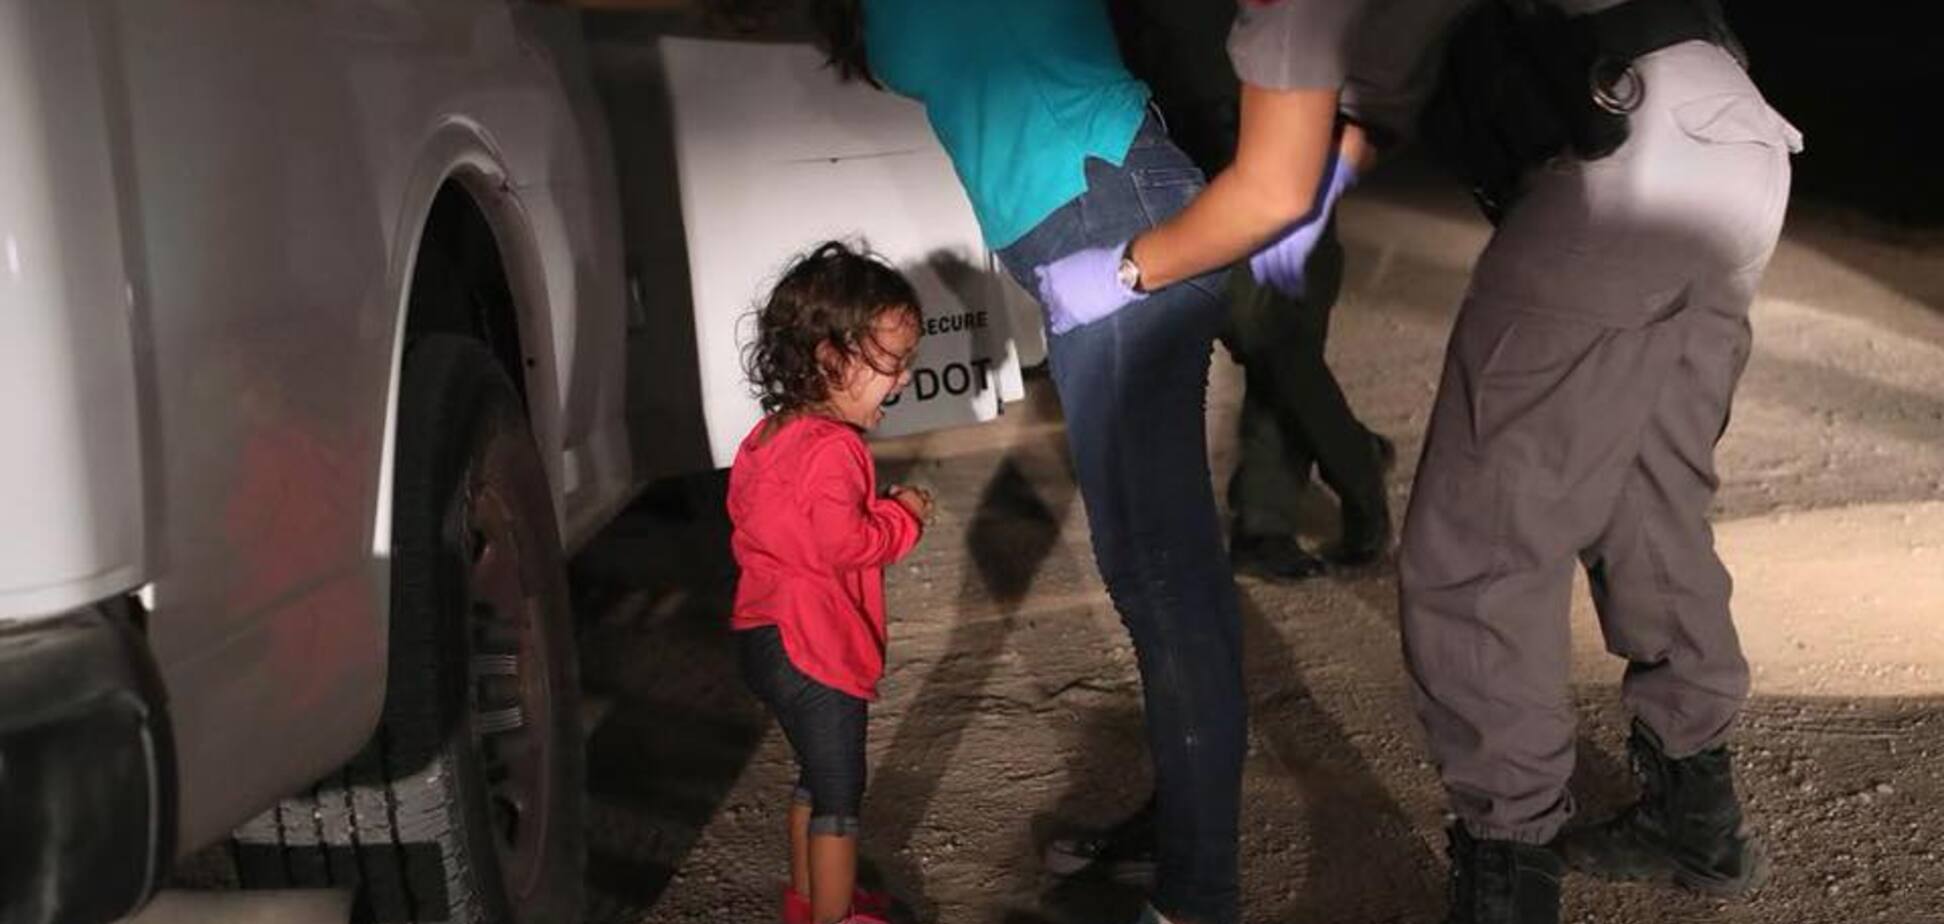 Сила одного фото: як Трамп і дівчинка, яка плаче, сколихнули світ